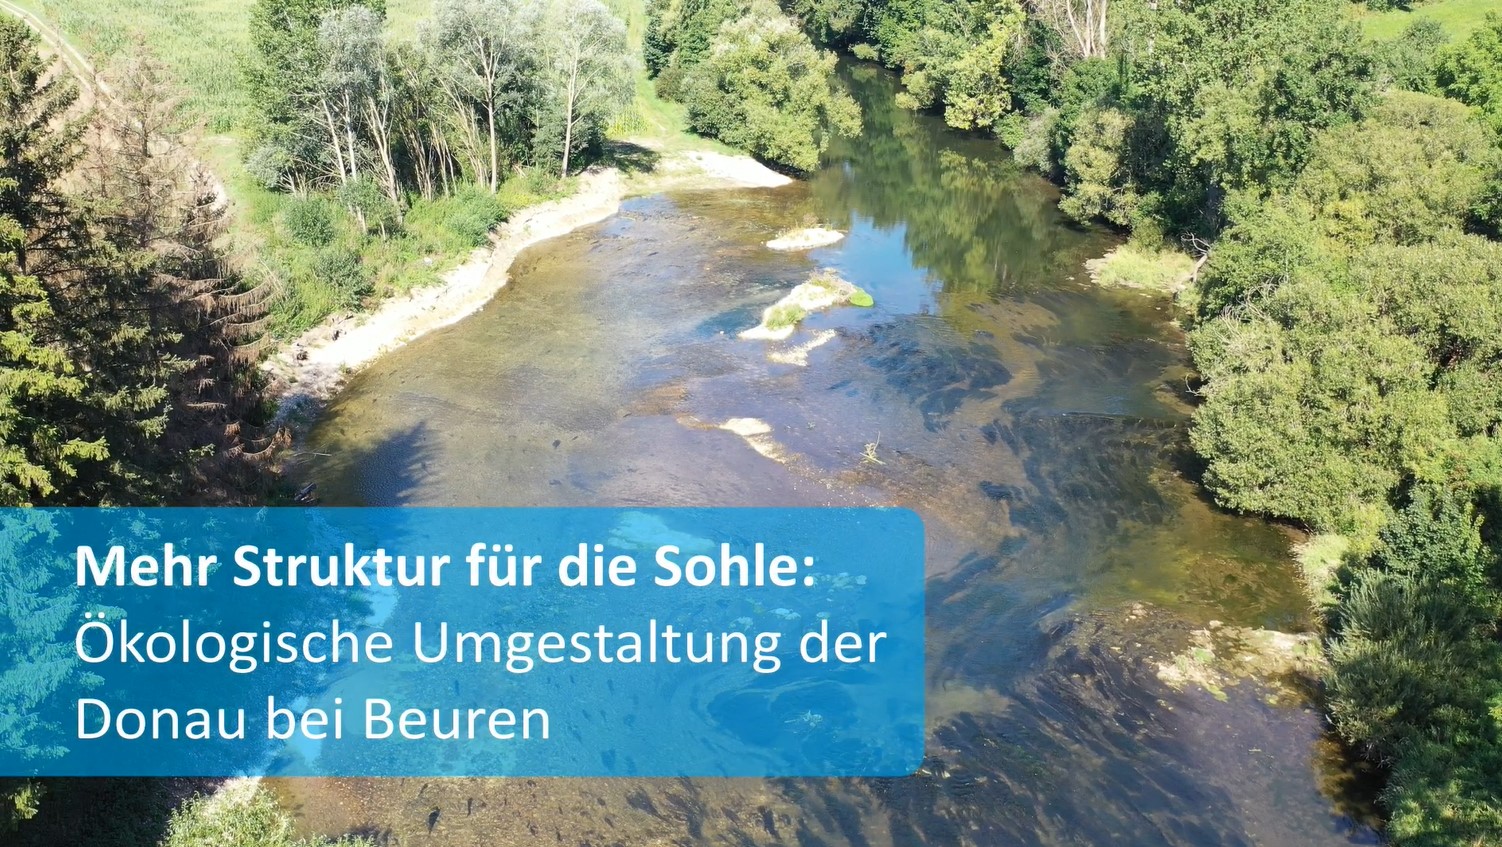  Vitale Gewässer - Vorschaubild Video zur Maßnahme Donau bei Beuren